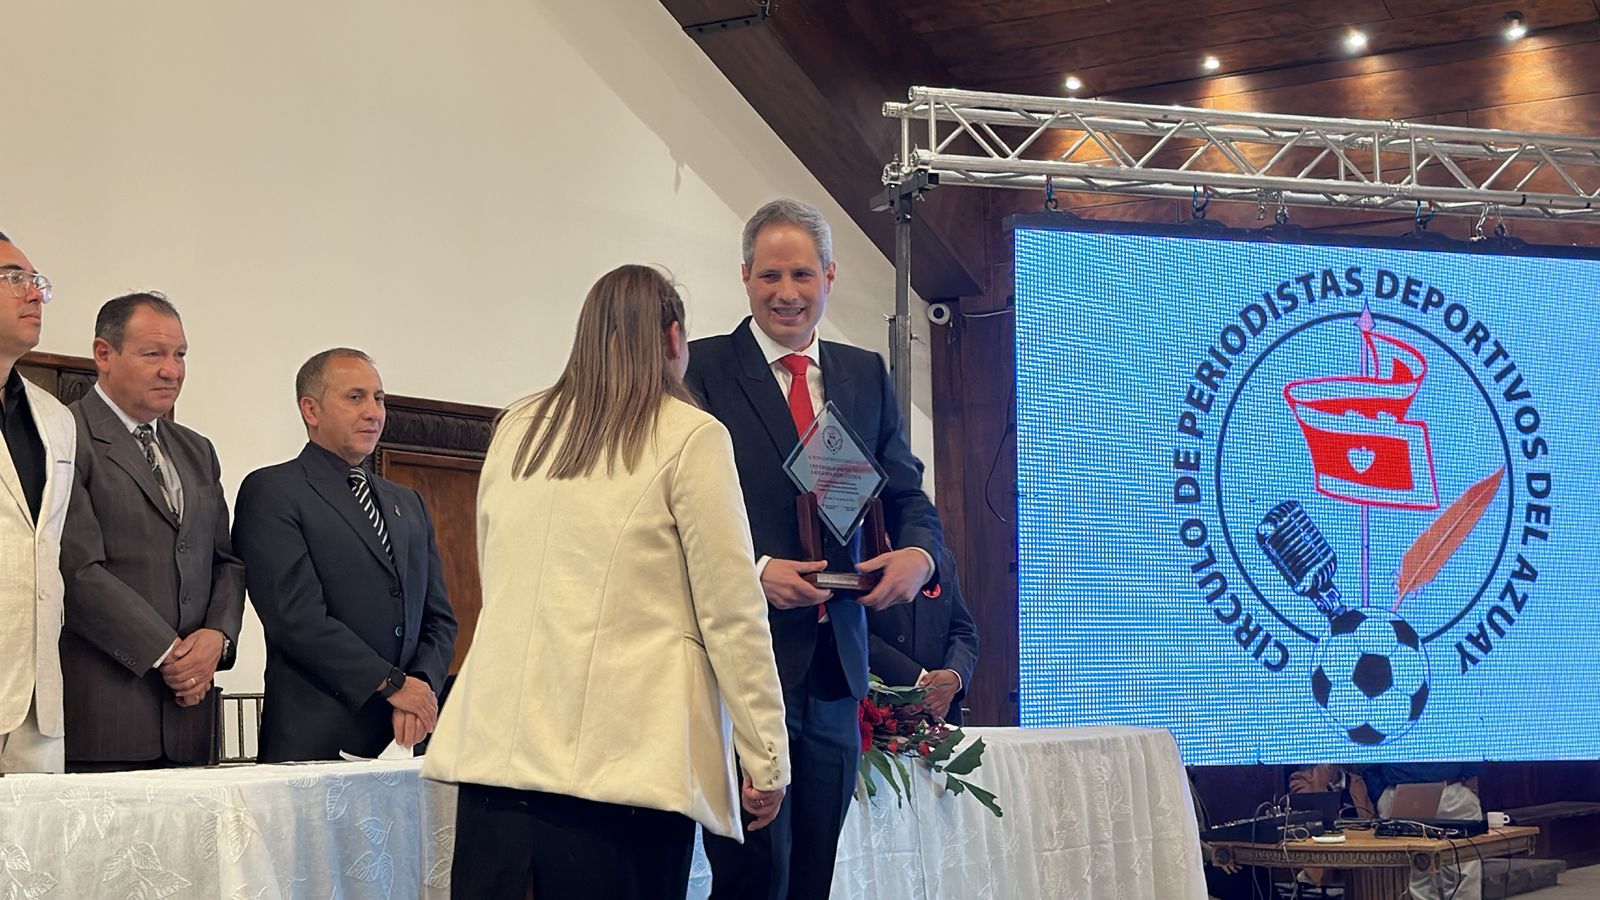 Andrea De Santis, director de la carrera recibe el reconocimiento por parte del CPDA